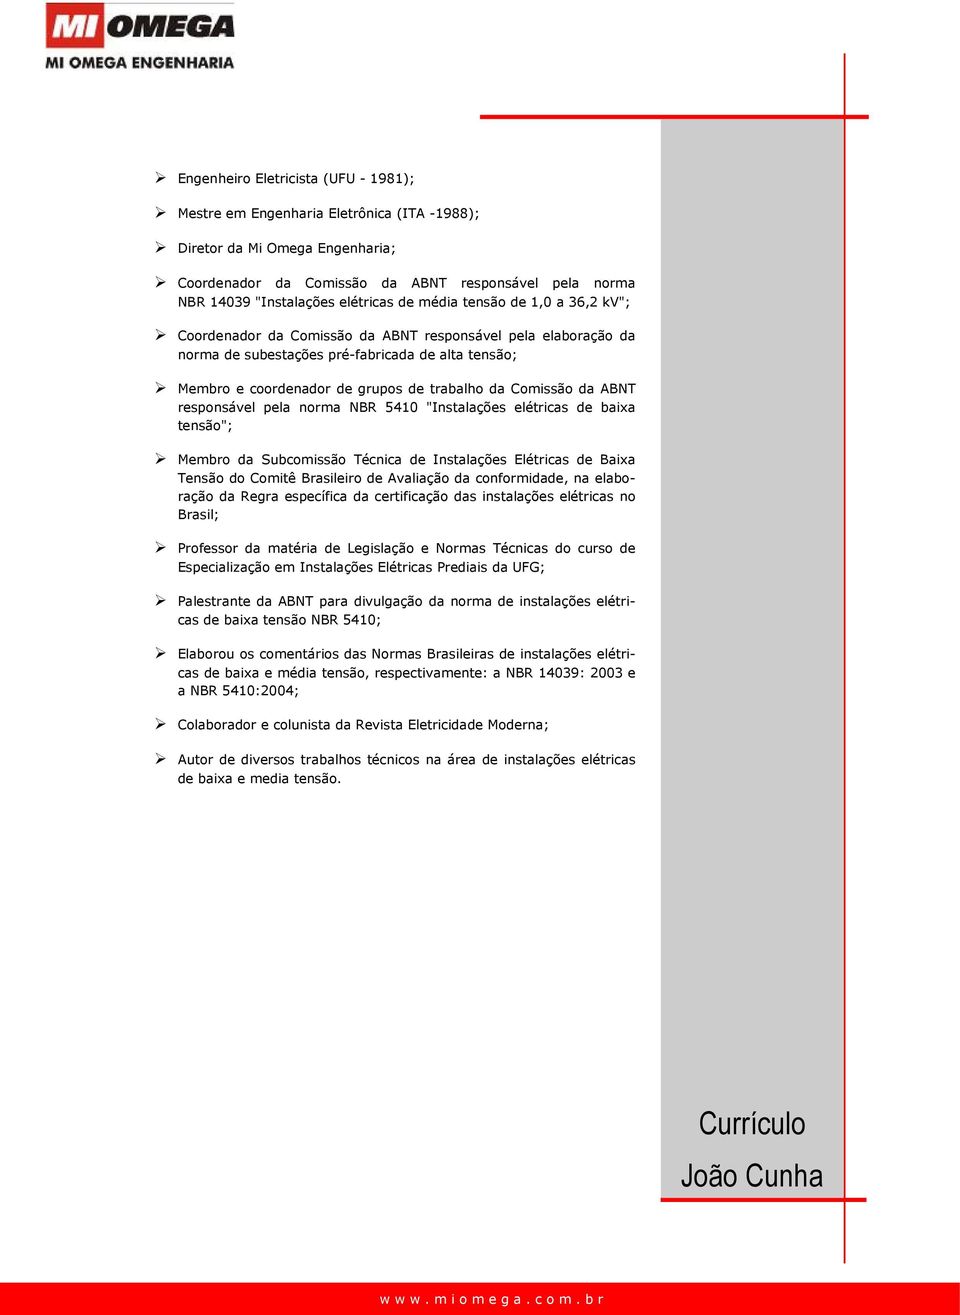 trabalho da Comissão da ABNT responsável pela norma NBR 5410 "Instalações elétricas de baixa tensão"; Membro da Subcomissão Técnica de Instalações Elétricas de Baixa Tensão do Comitê Brasileiro de